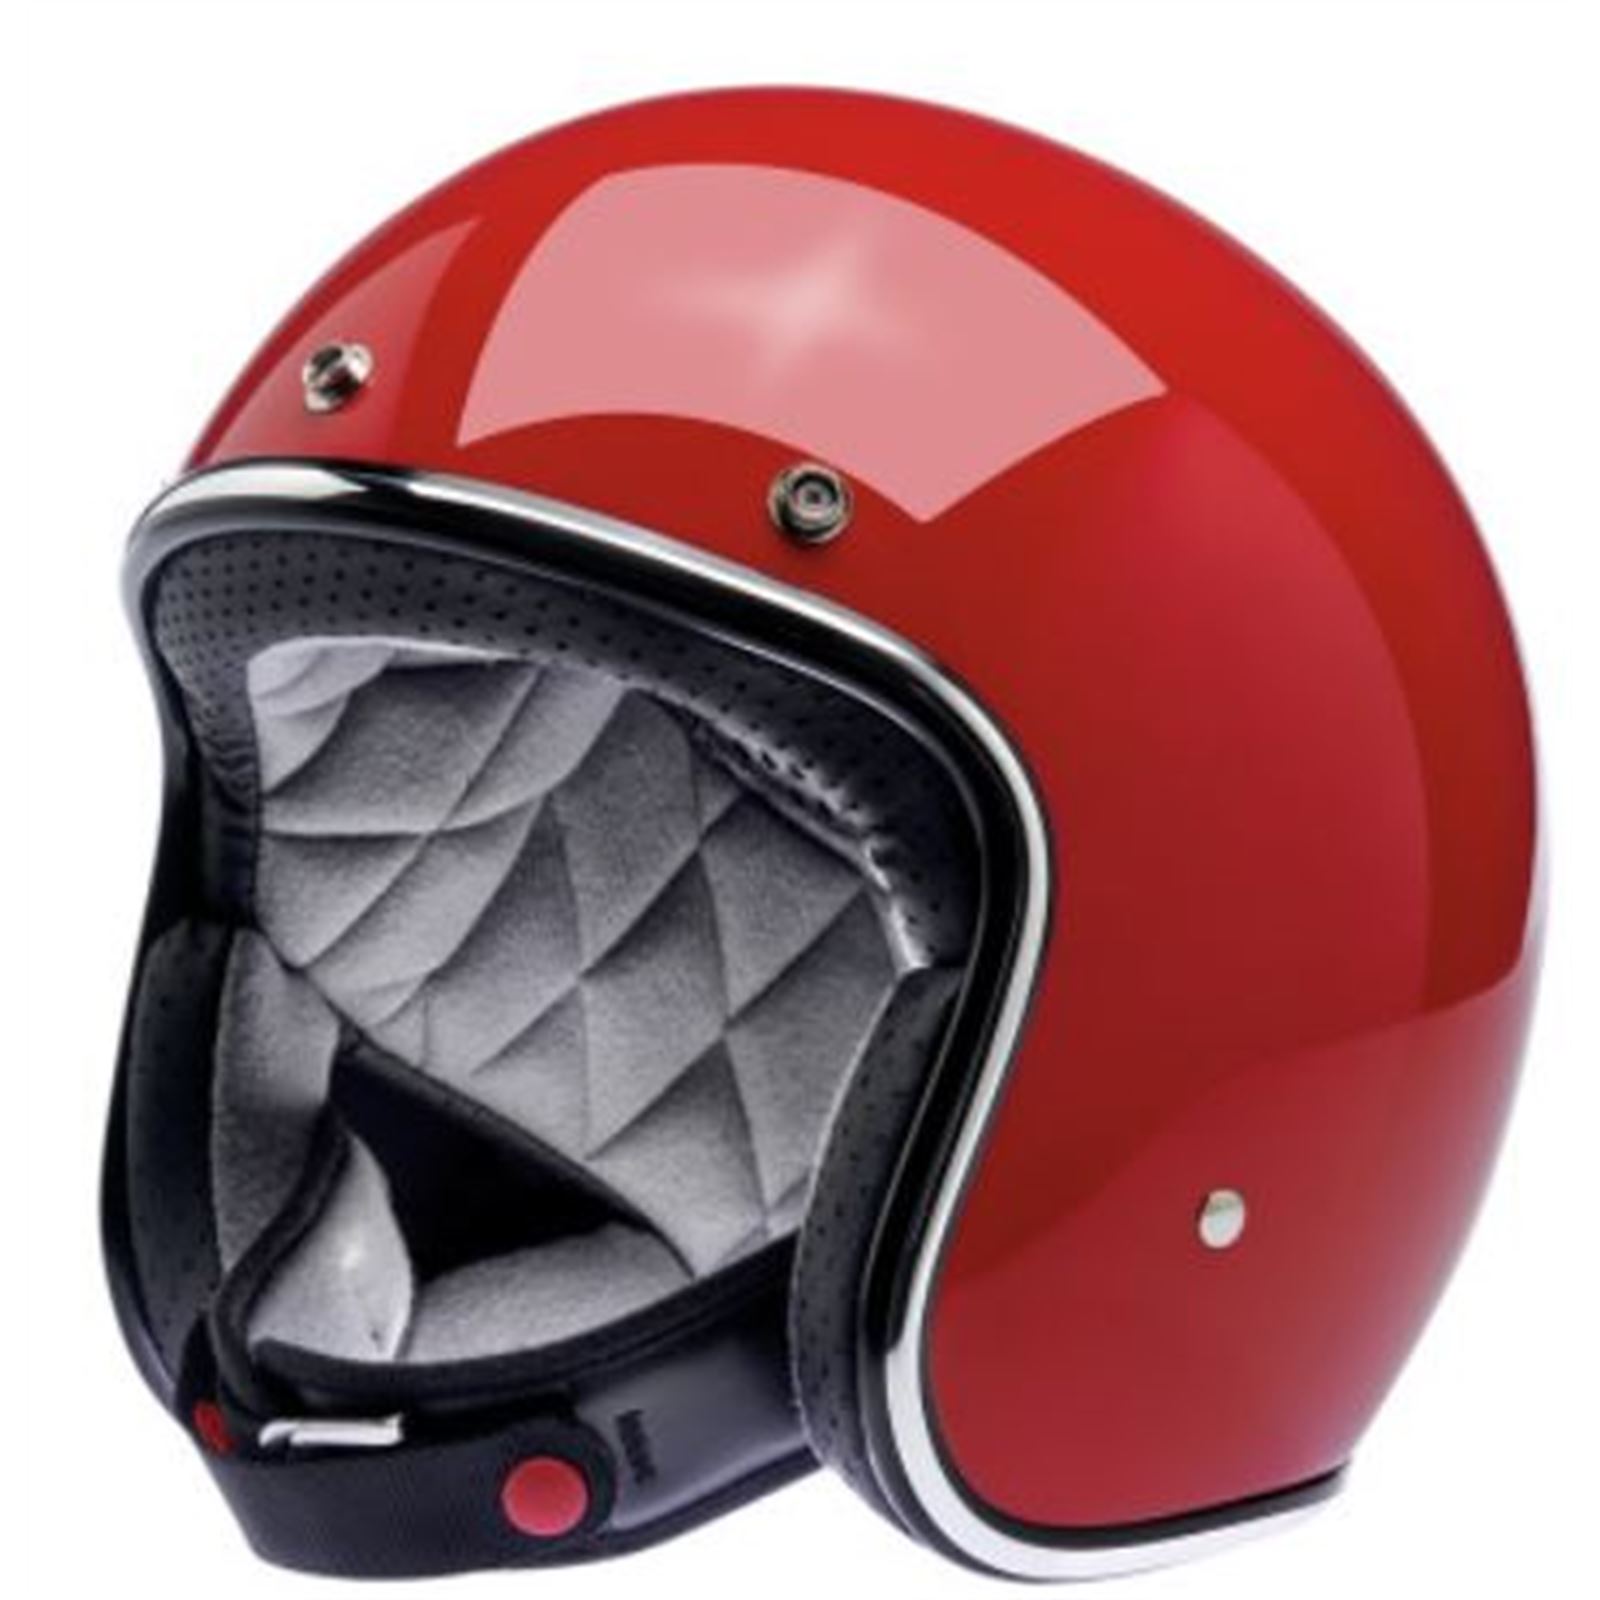 Biltwell Inc. Bonanza Helmet - Gloss Blood Red - Medium